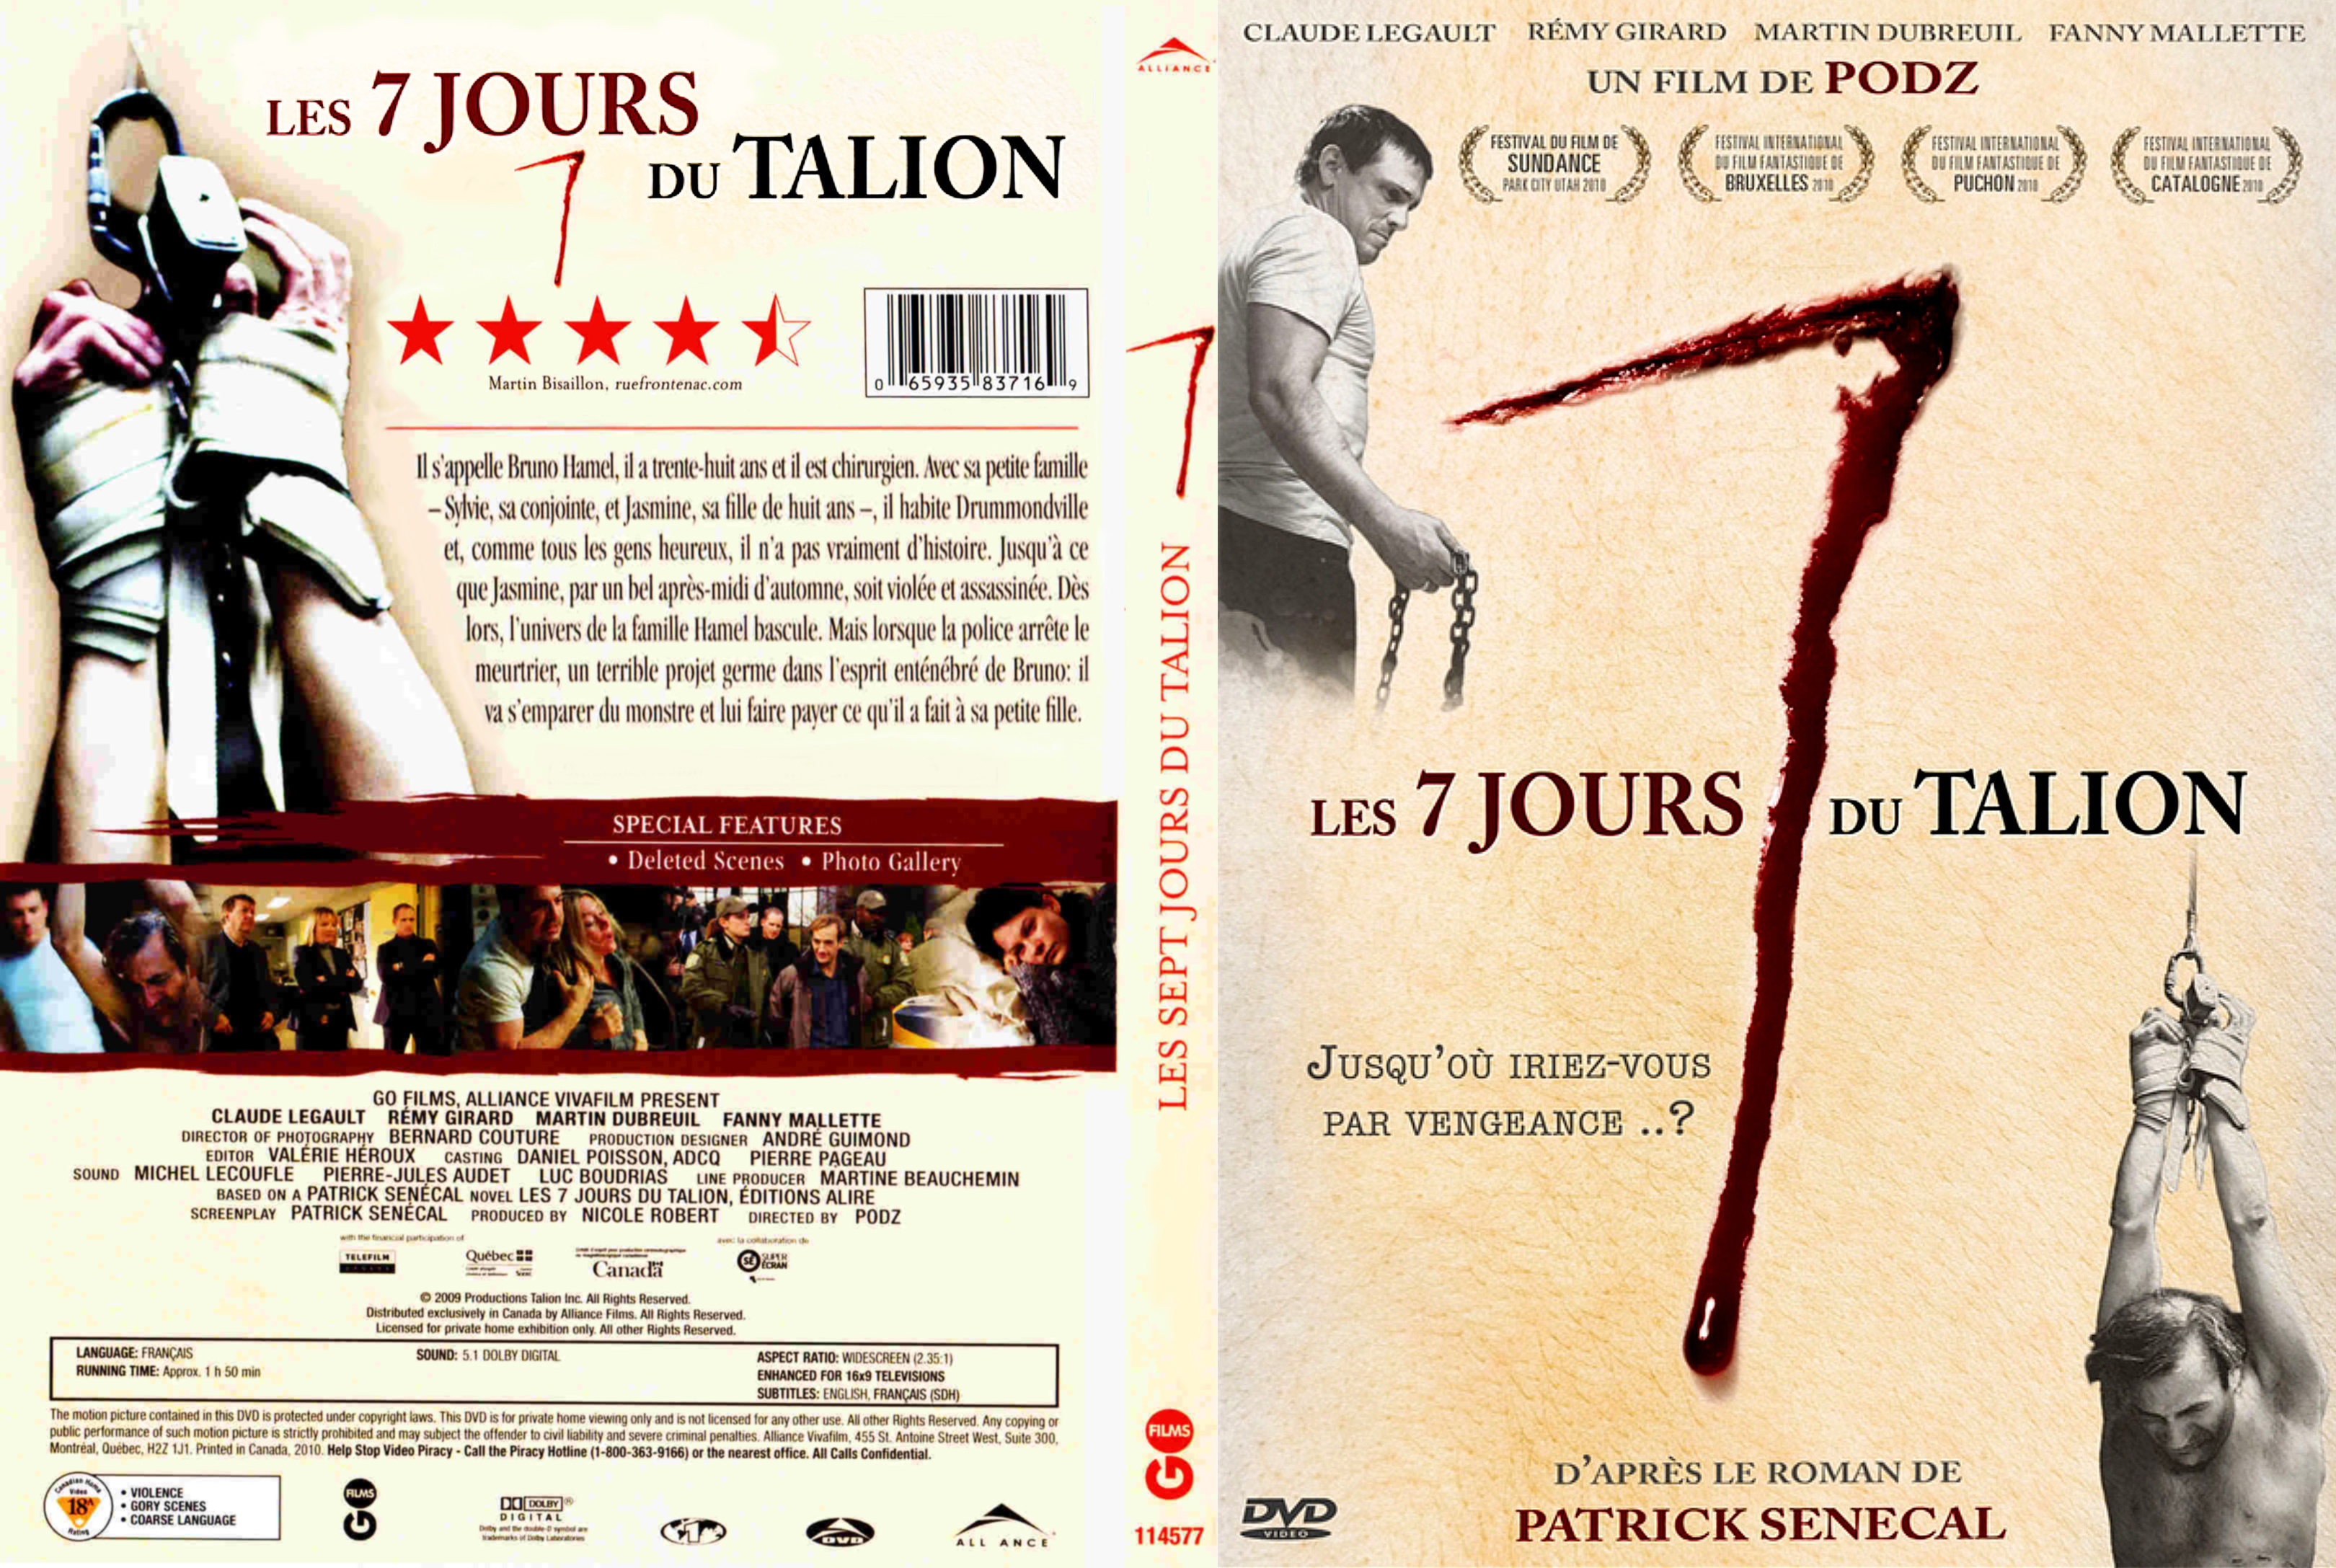 Jaquette DVD Les 7 Jours du Talion custom